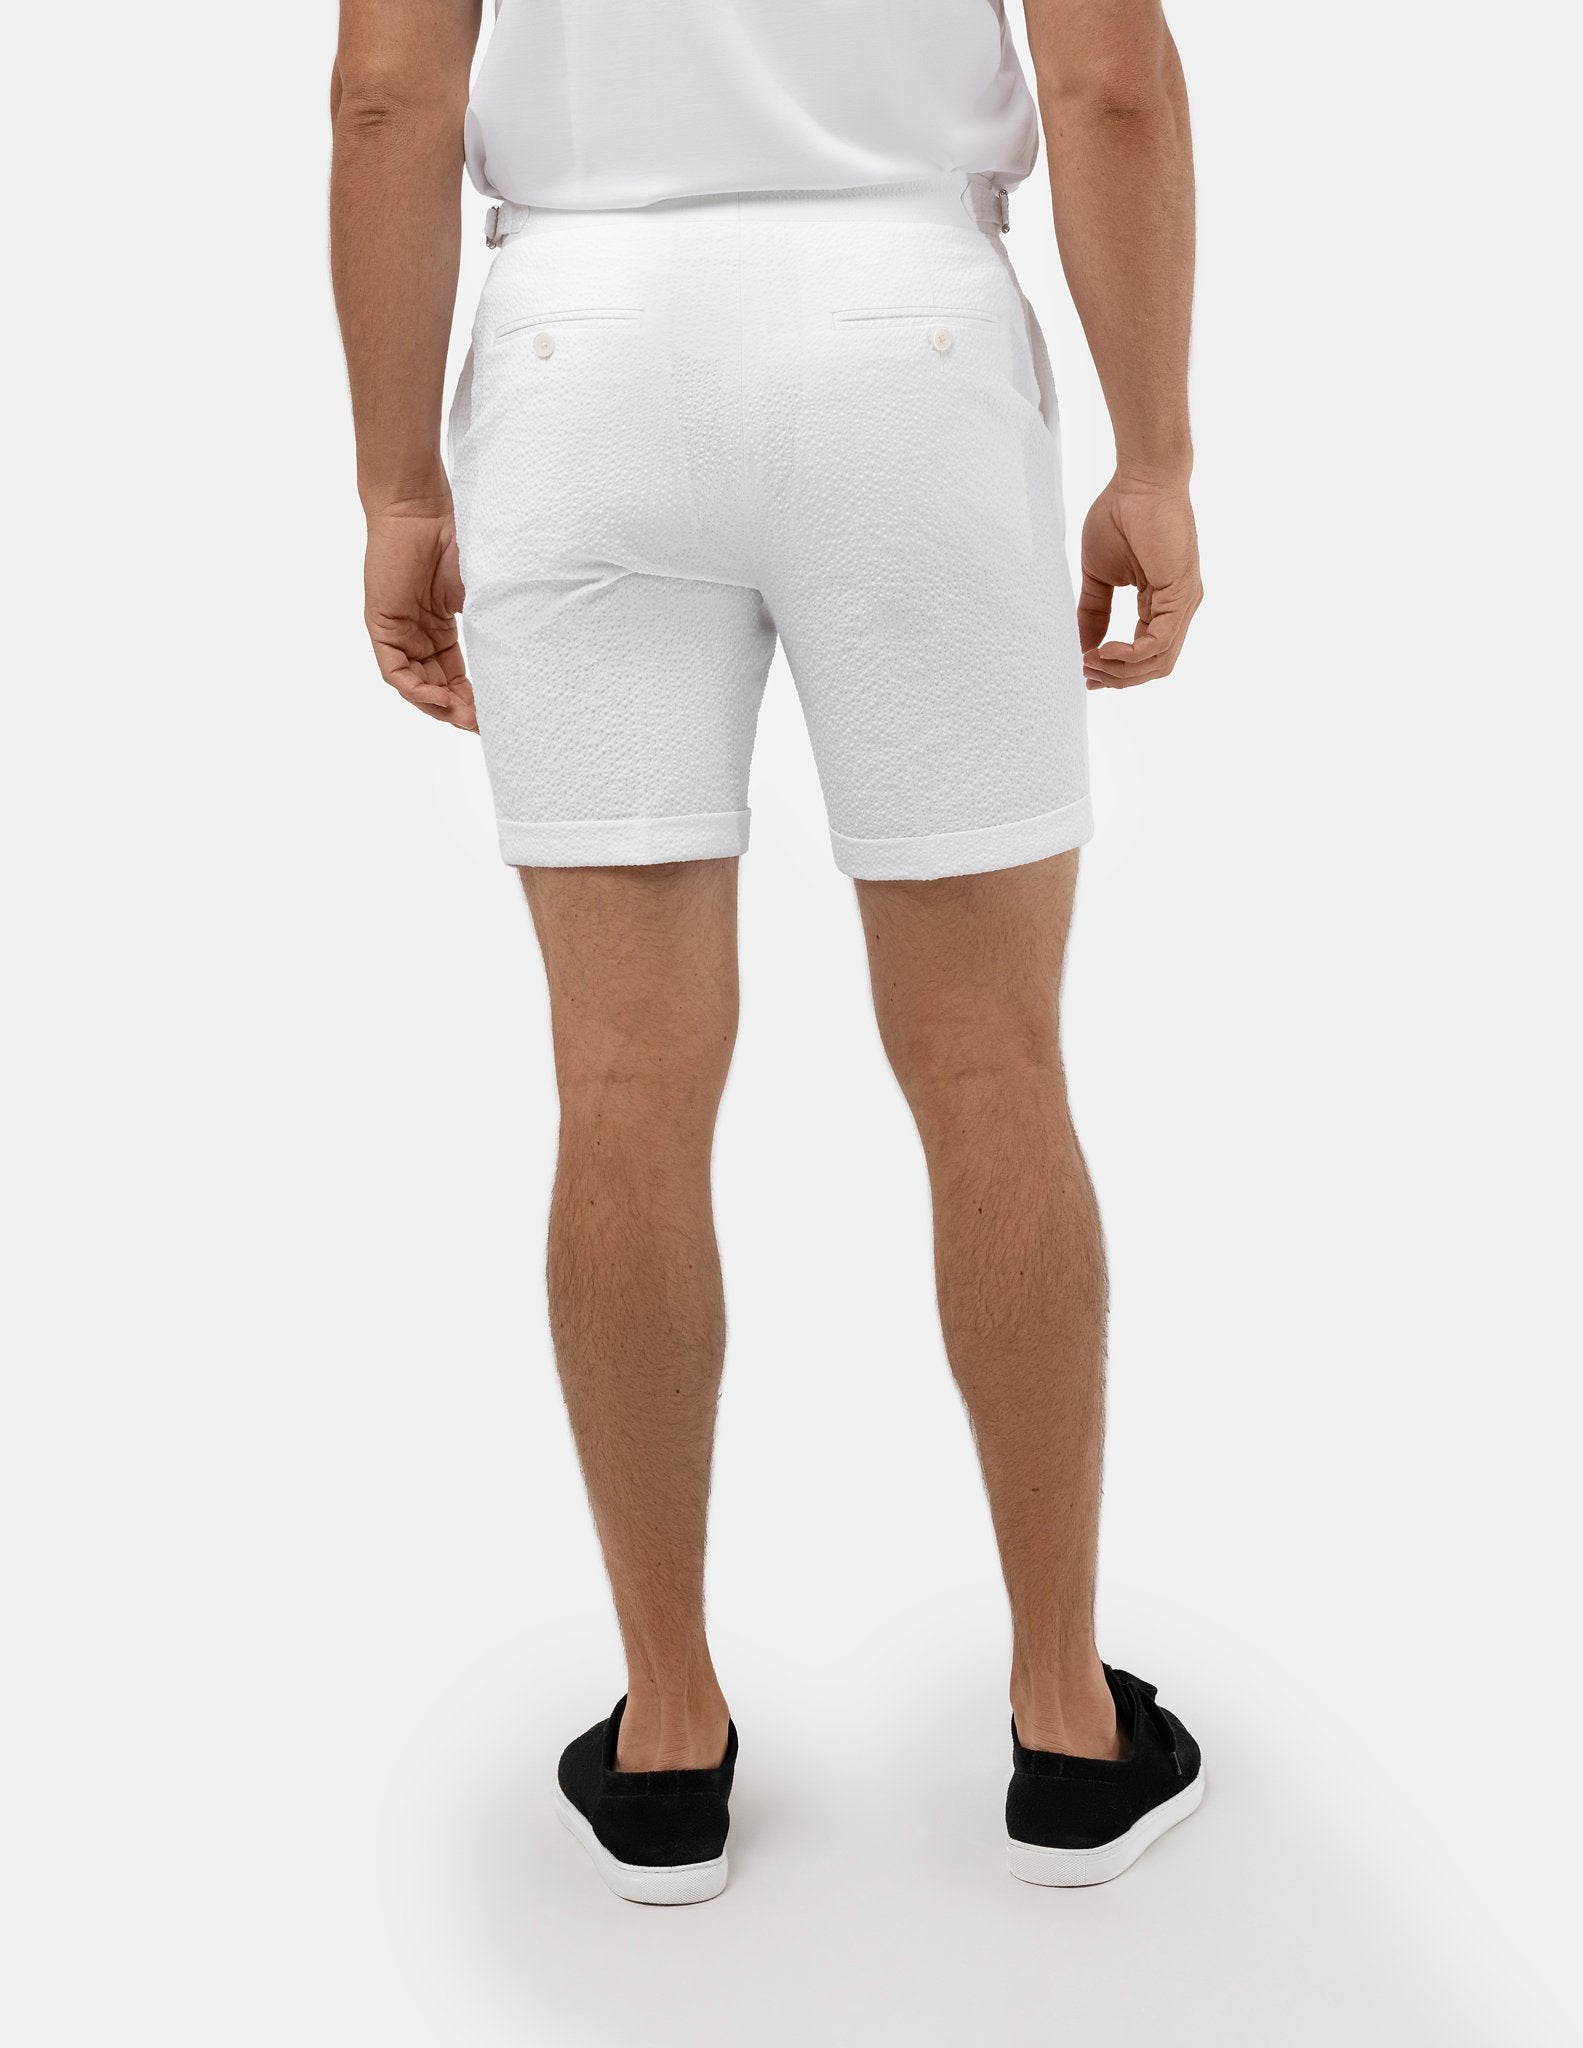 White Seersucker Stretch Shorts - Samir Bachkami